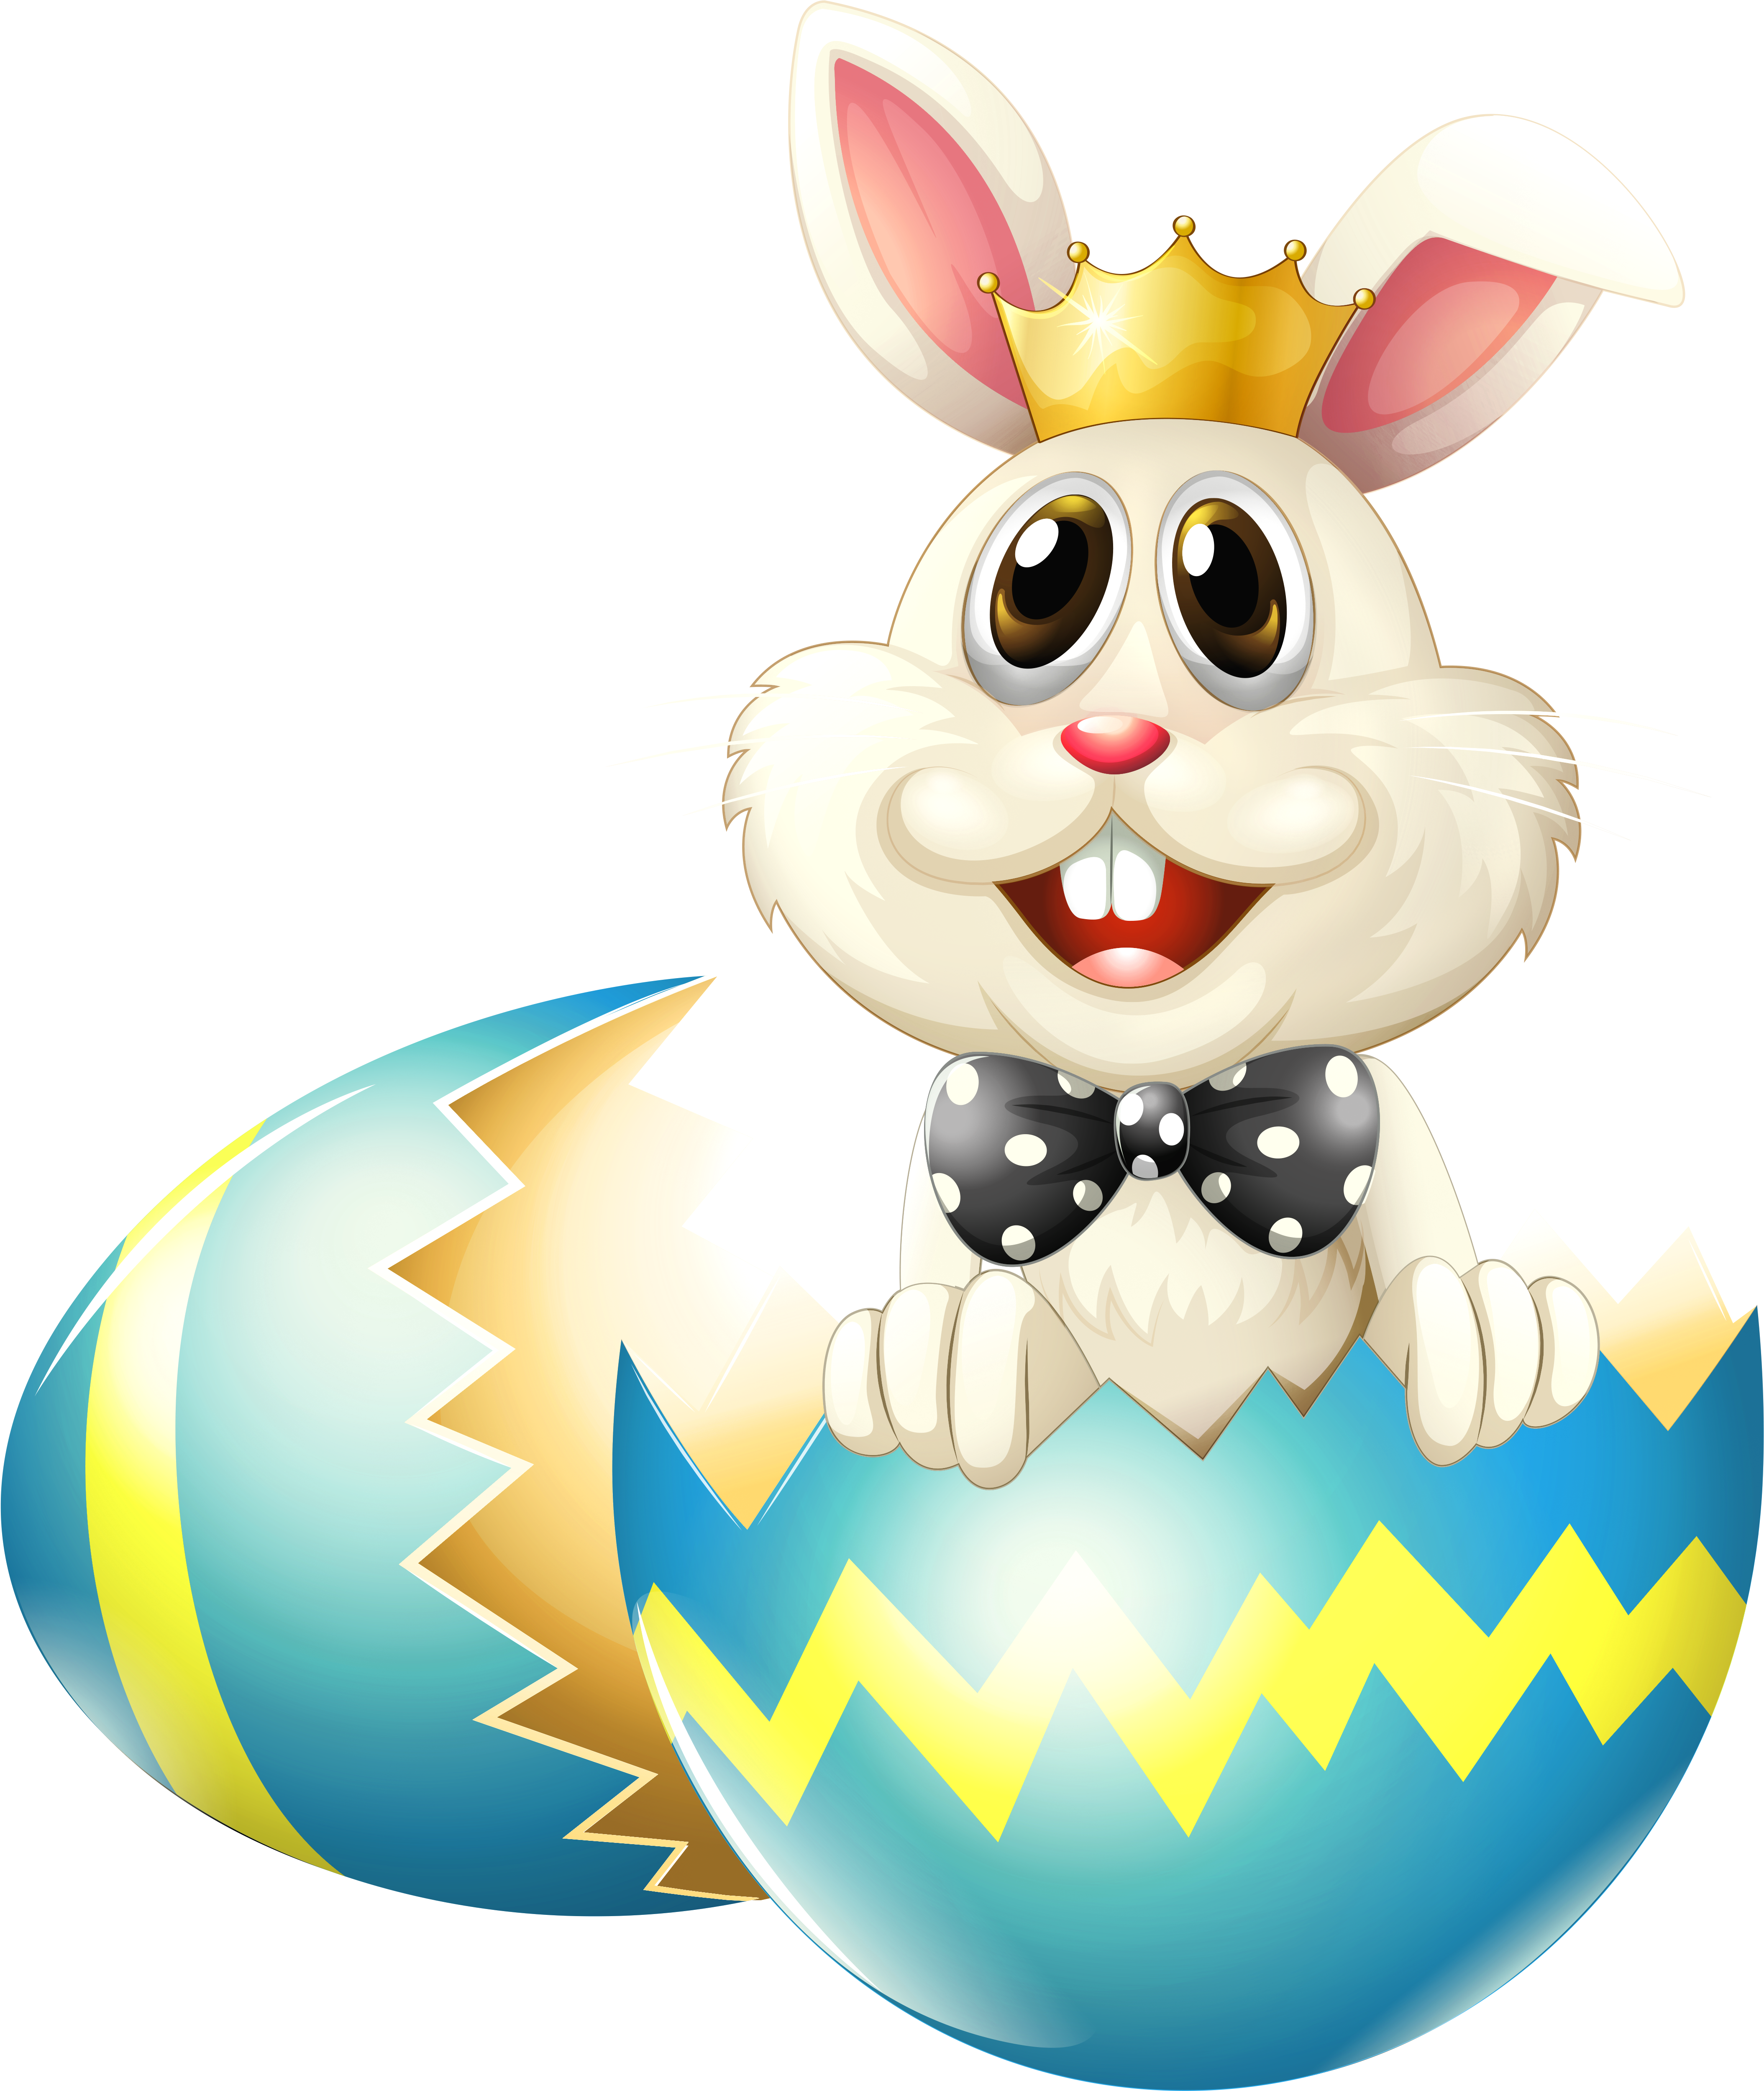 Easter Egg Hunt Winner (4712x5428)